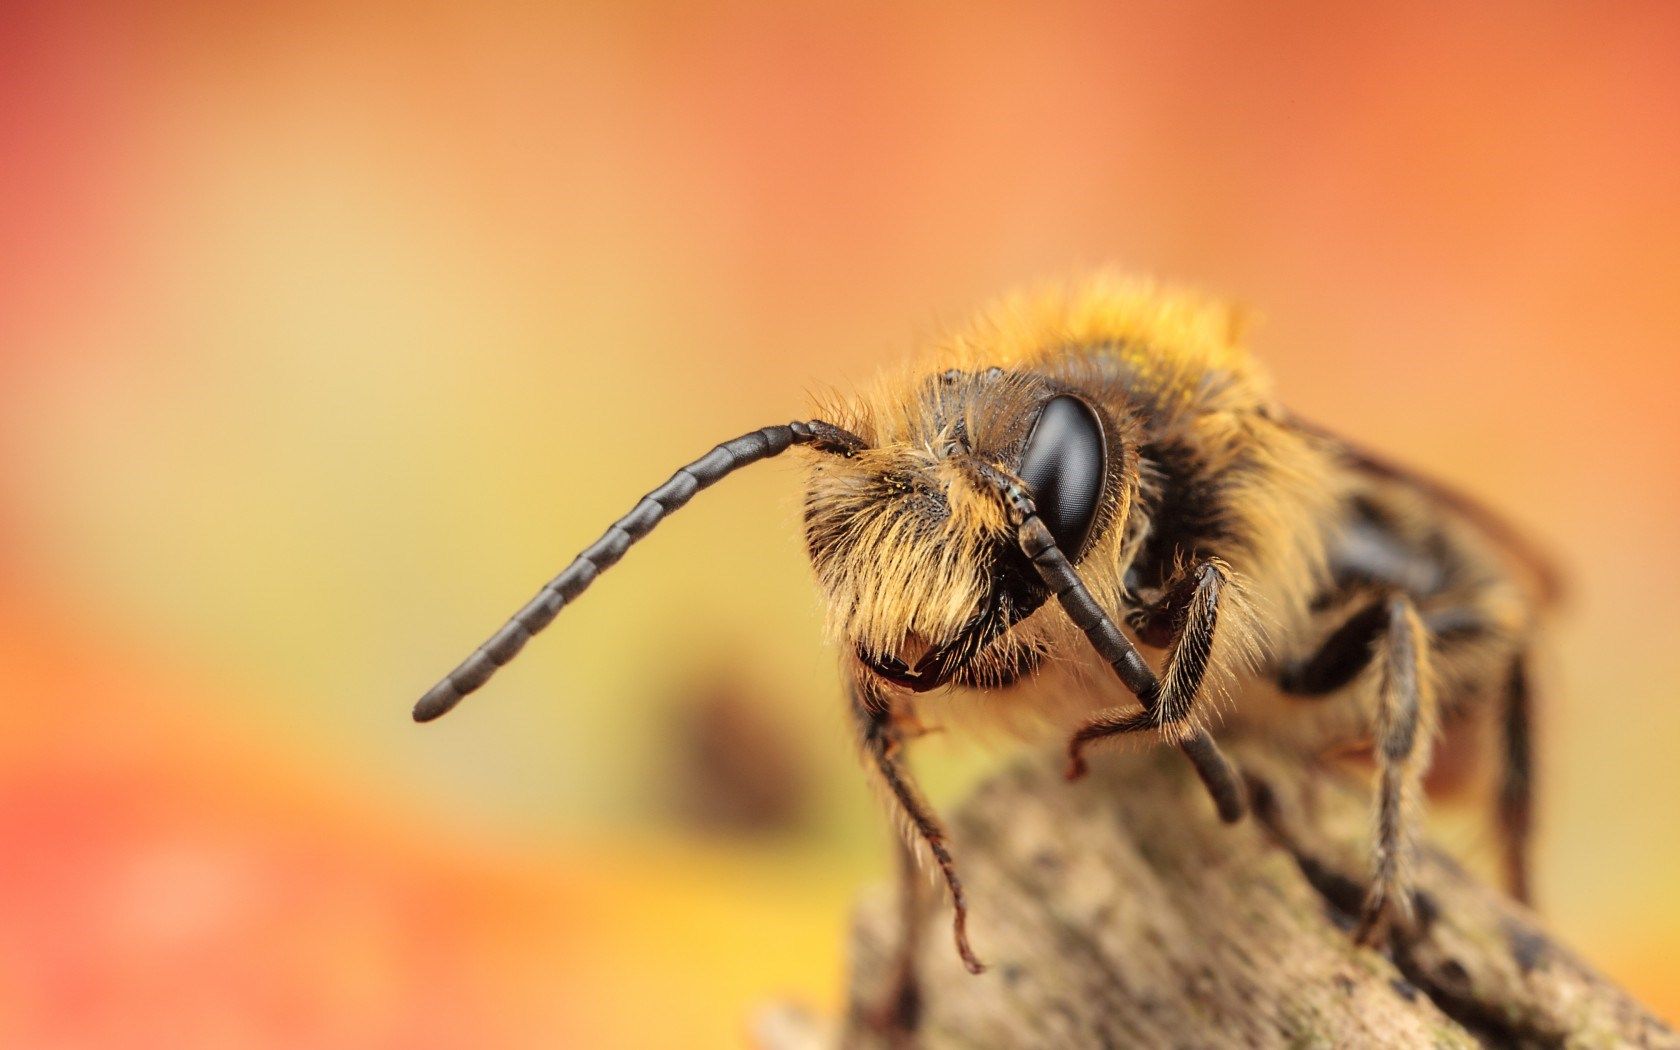 Bee Wallpaper. Bee Wallpaper, Queenbee